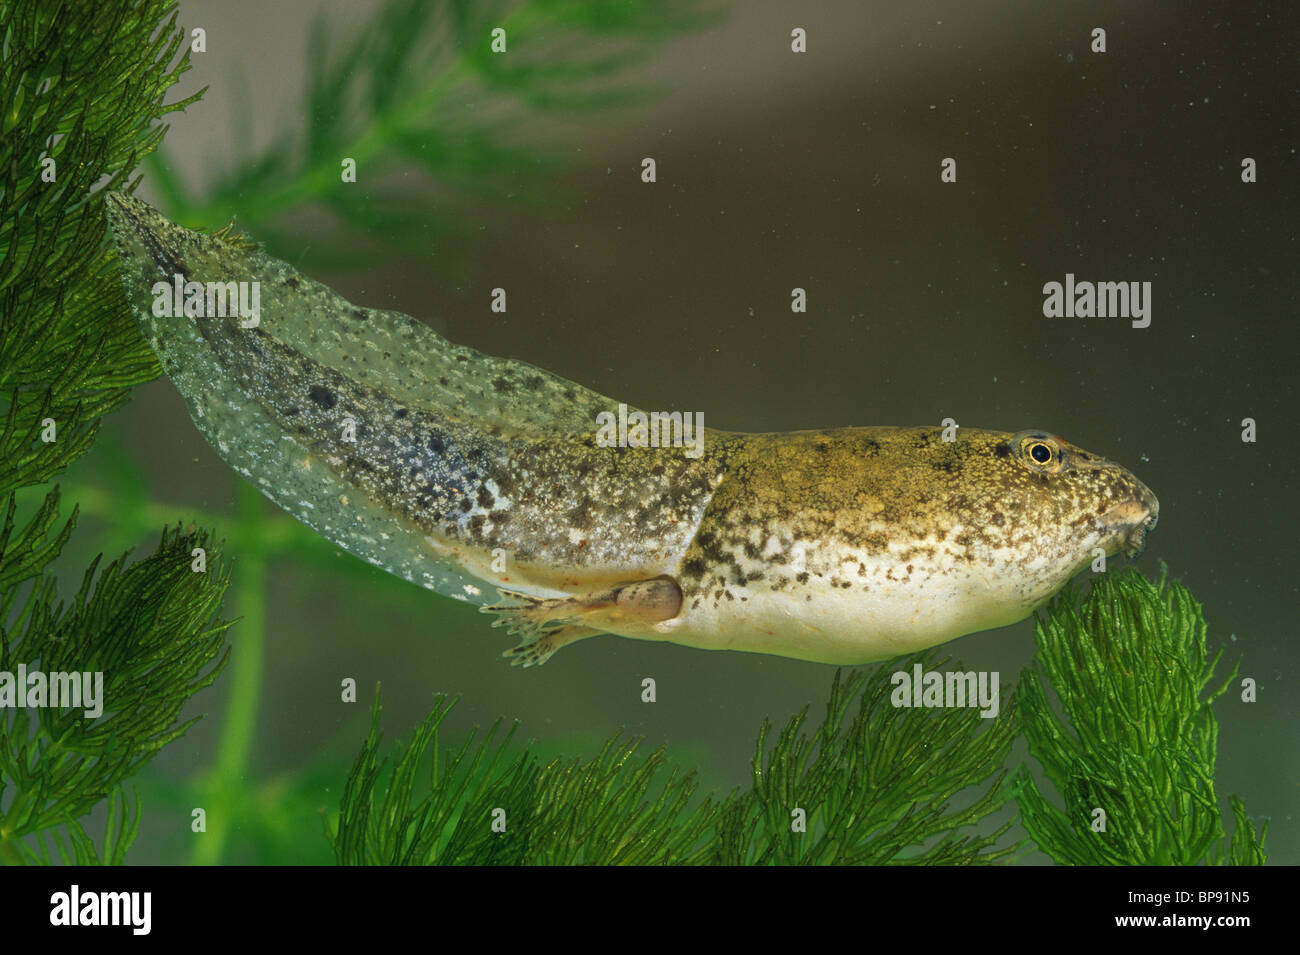 Green Frog tadpole (Rana clamitans) with tail and leg development, E USA Stock Photo